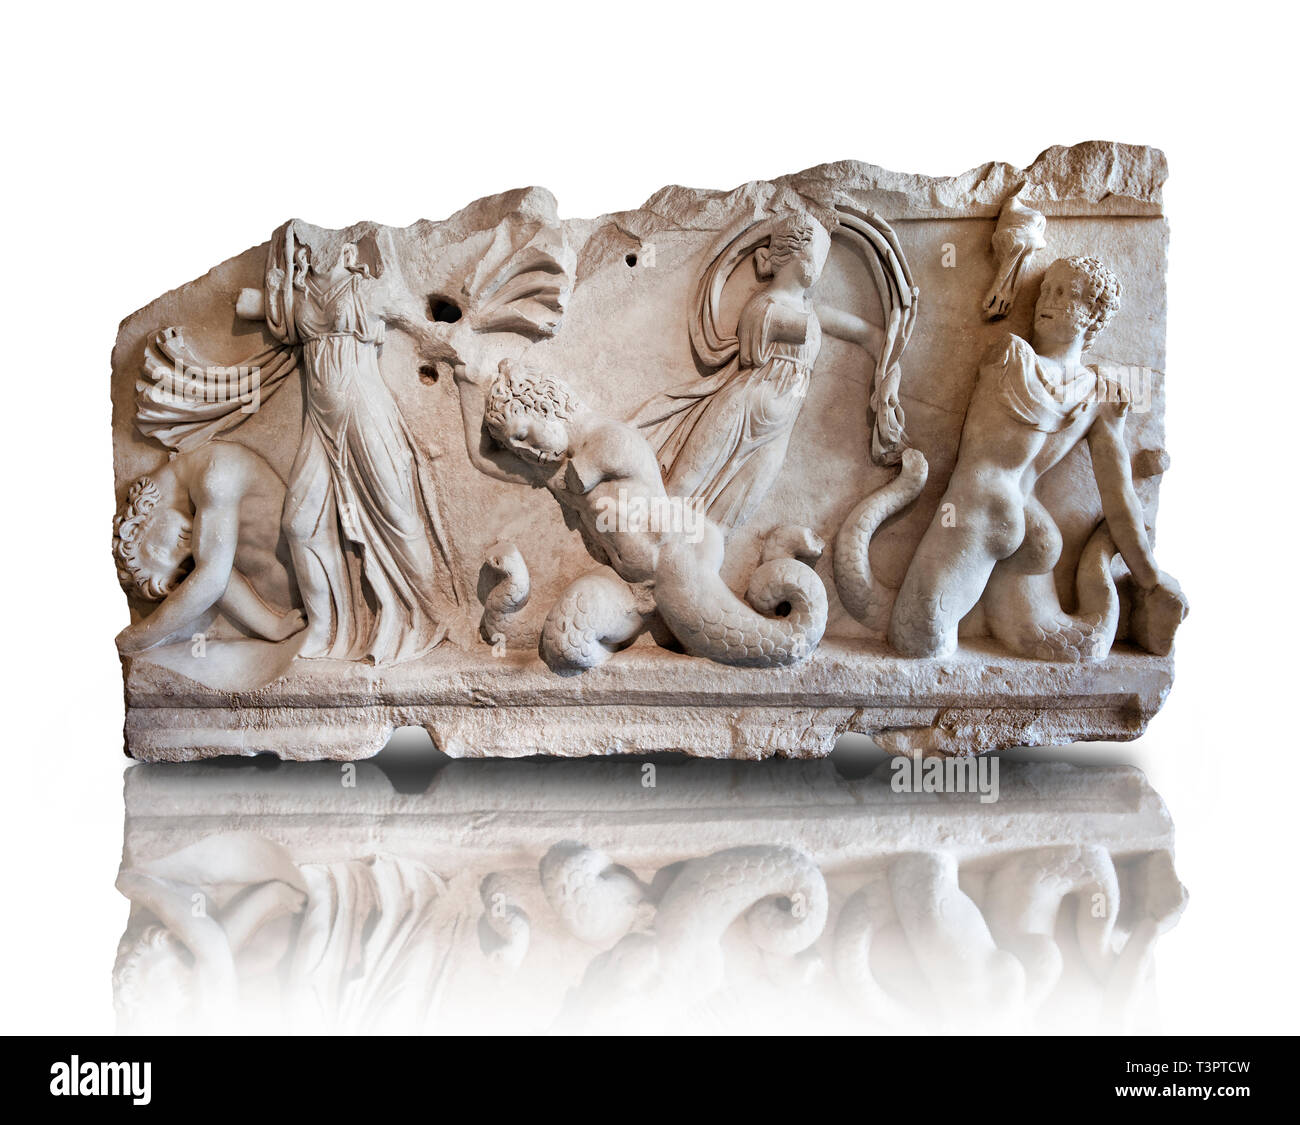 2° cent. Annuncio rilievo romano scultura raffigurante Gigantomachy, la battaglia tra gli dèi e i giganti. Da Aphrodisias (Geyne, Ayden), Turchia. Istanbu Foto Stock